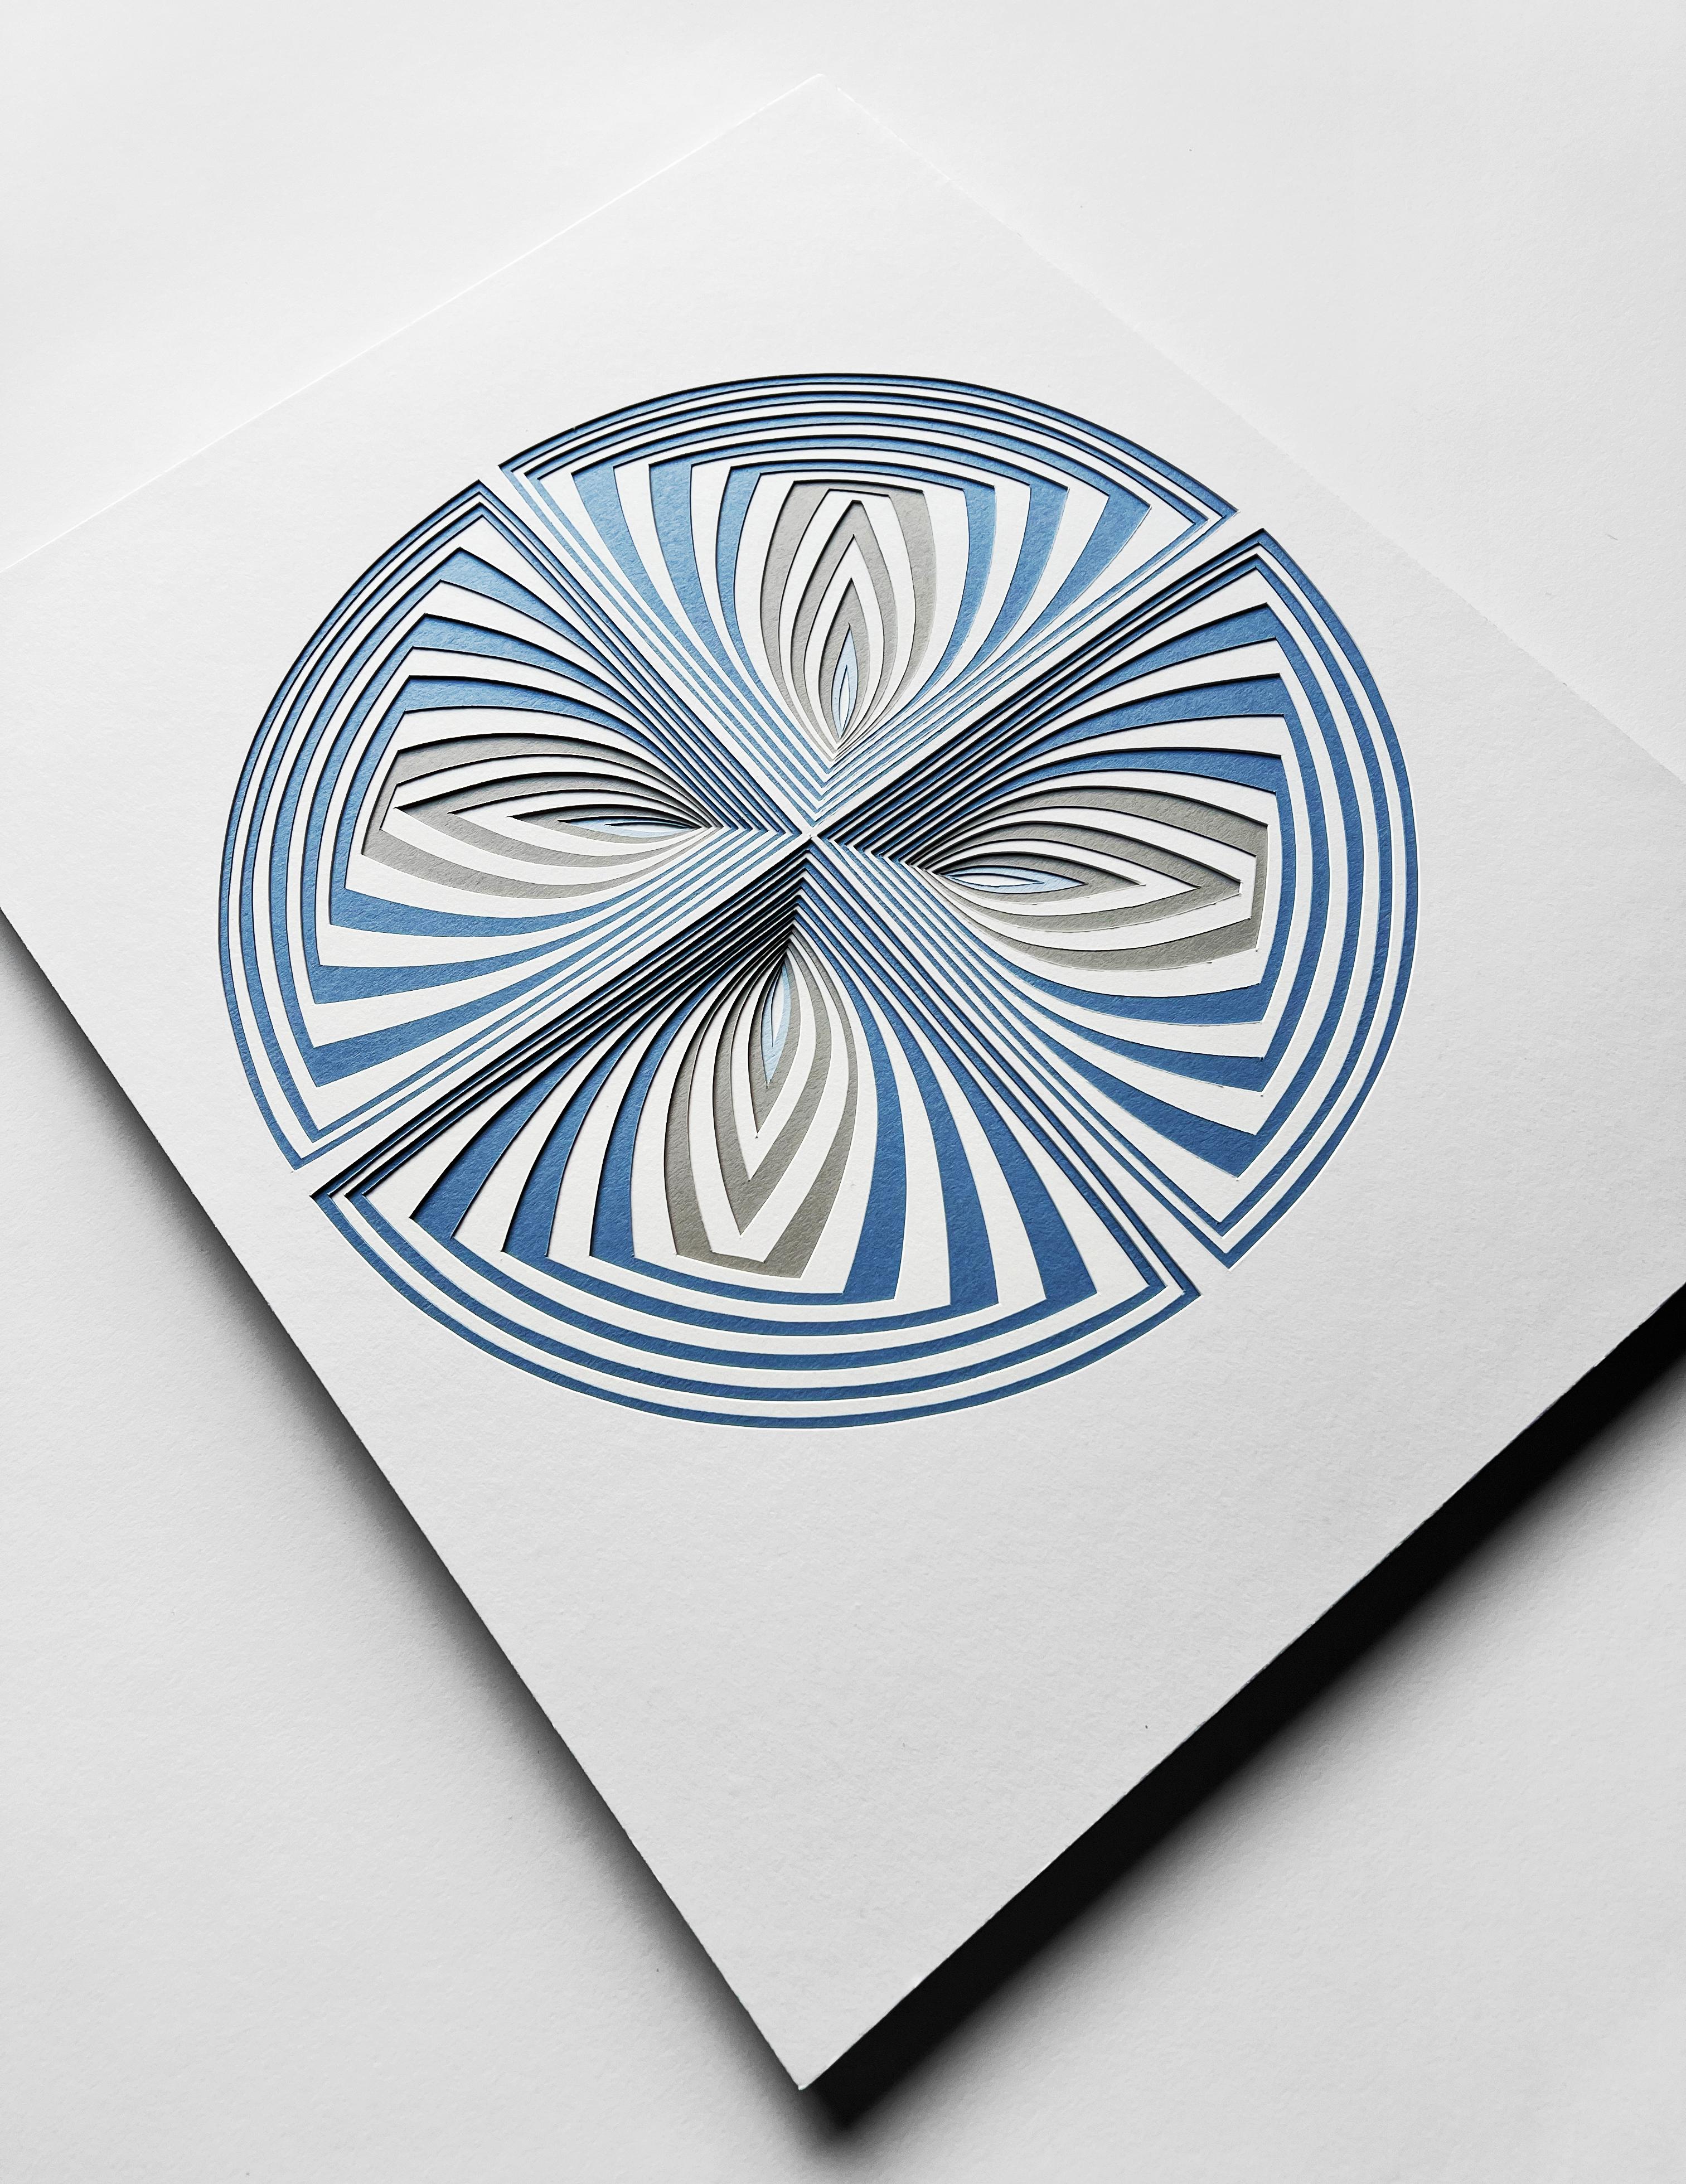 Elizabeth Gregory-Gruens Cut Work-Serie ist ein freihändiger Papierschneideprozess, der die Konturen unserer sich ständig verändernden emotionalen Erfahrung durch die Bewegung von Form, Linie und Farbe aufzeichnet. 

Die mit dem Skalpell freihändig